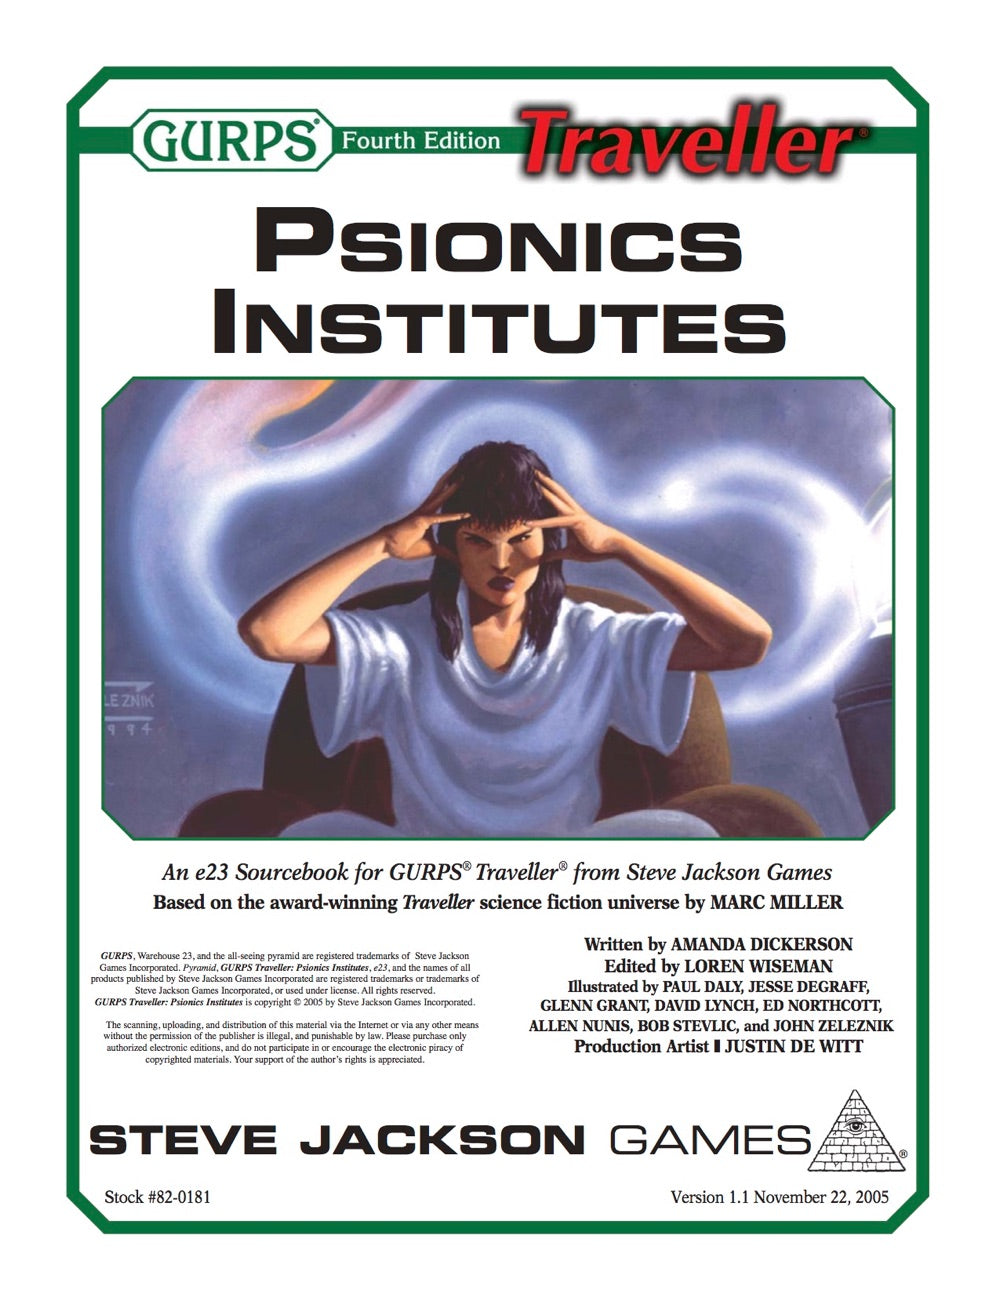 GURPS Traveller: Psionics Institutes